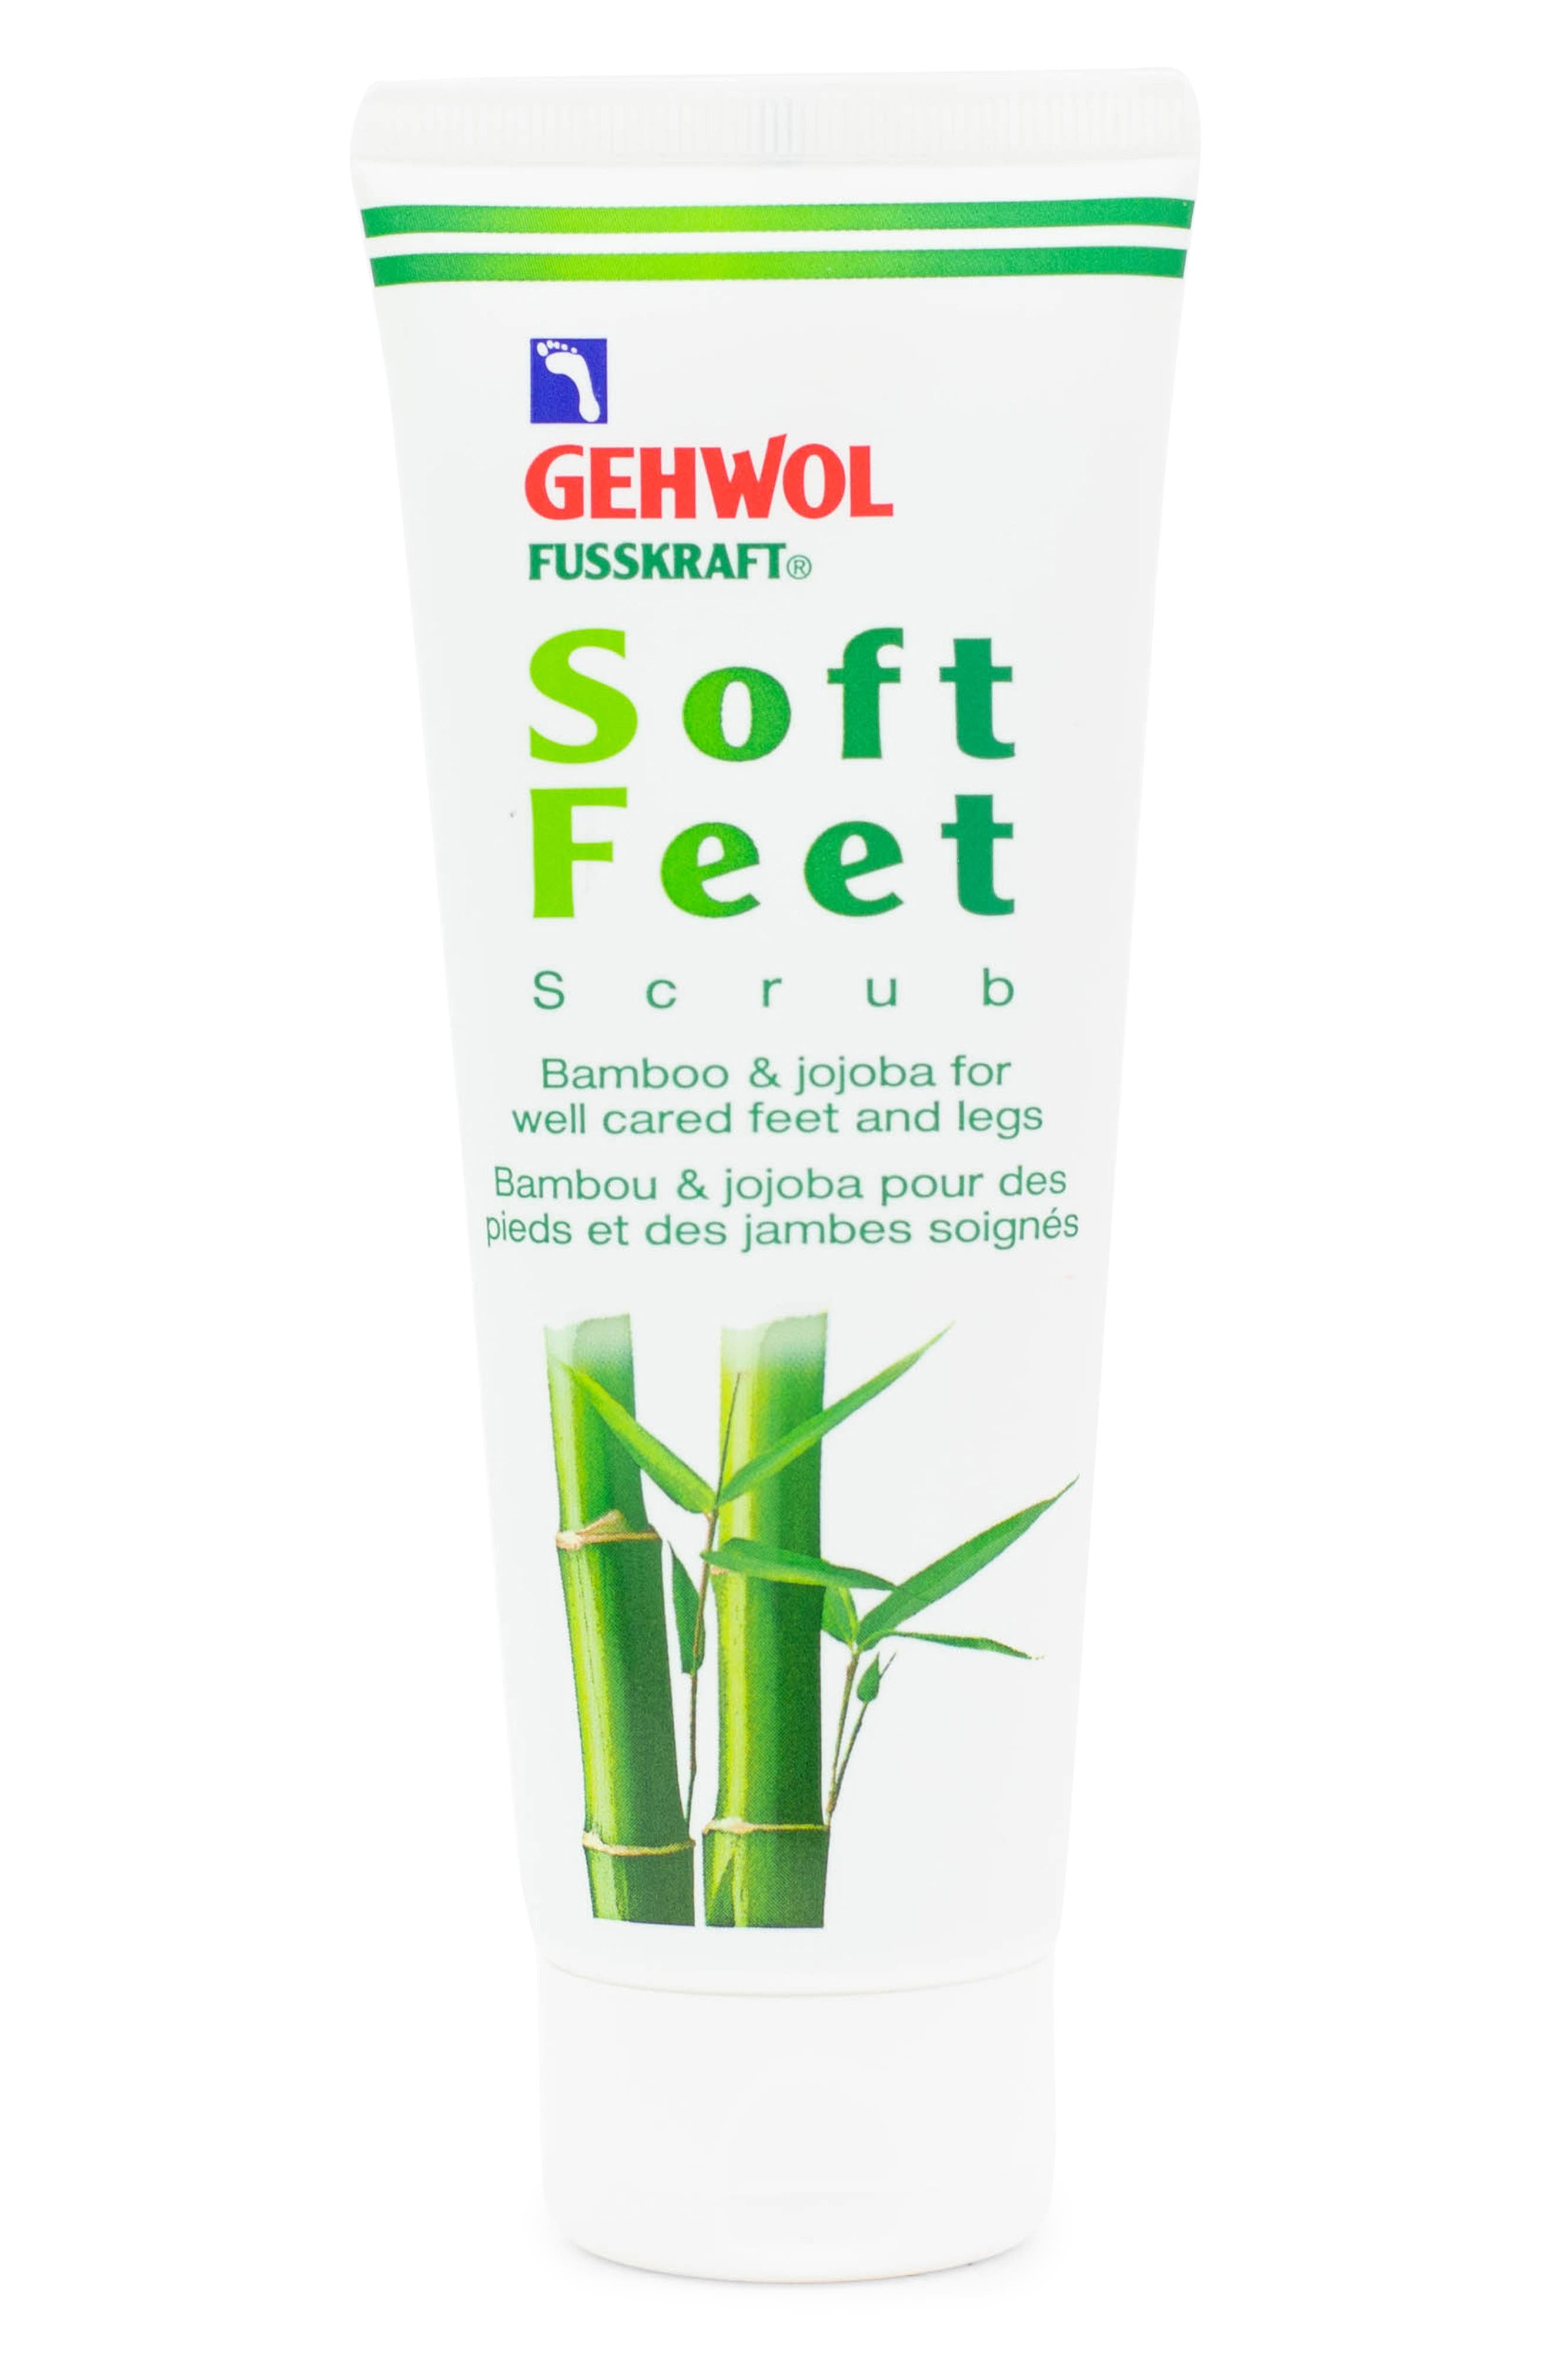 Gehwol(R) FUSSKRAFT(R) 'Soft Feet' Scrub